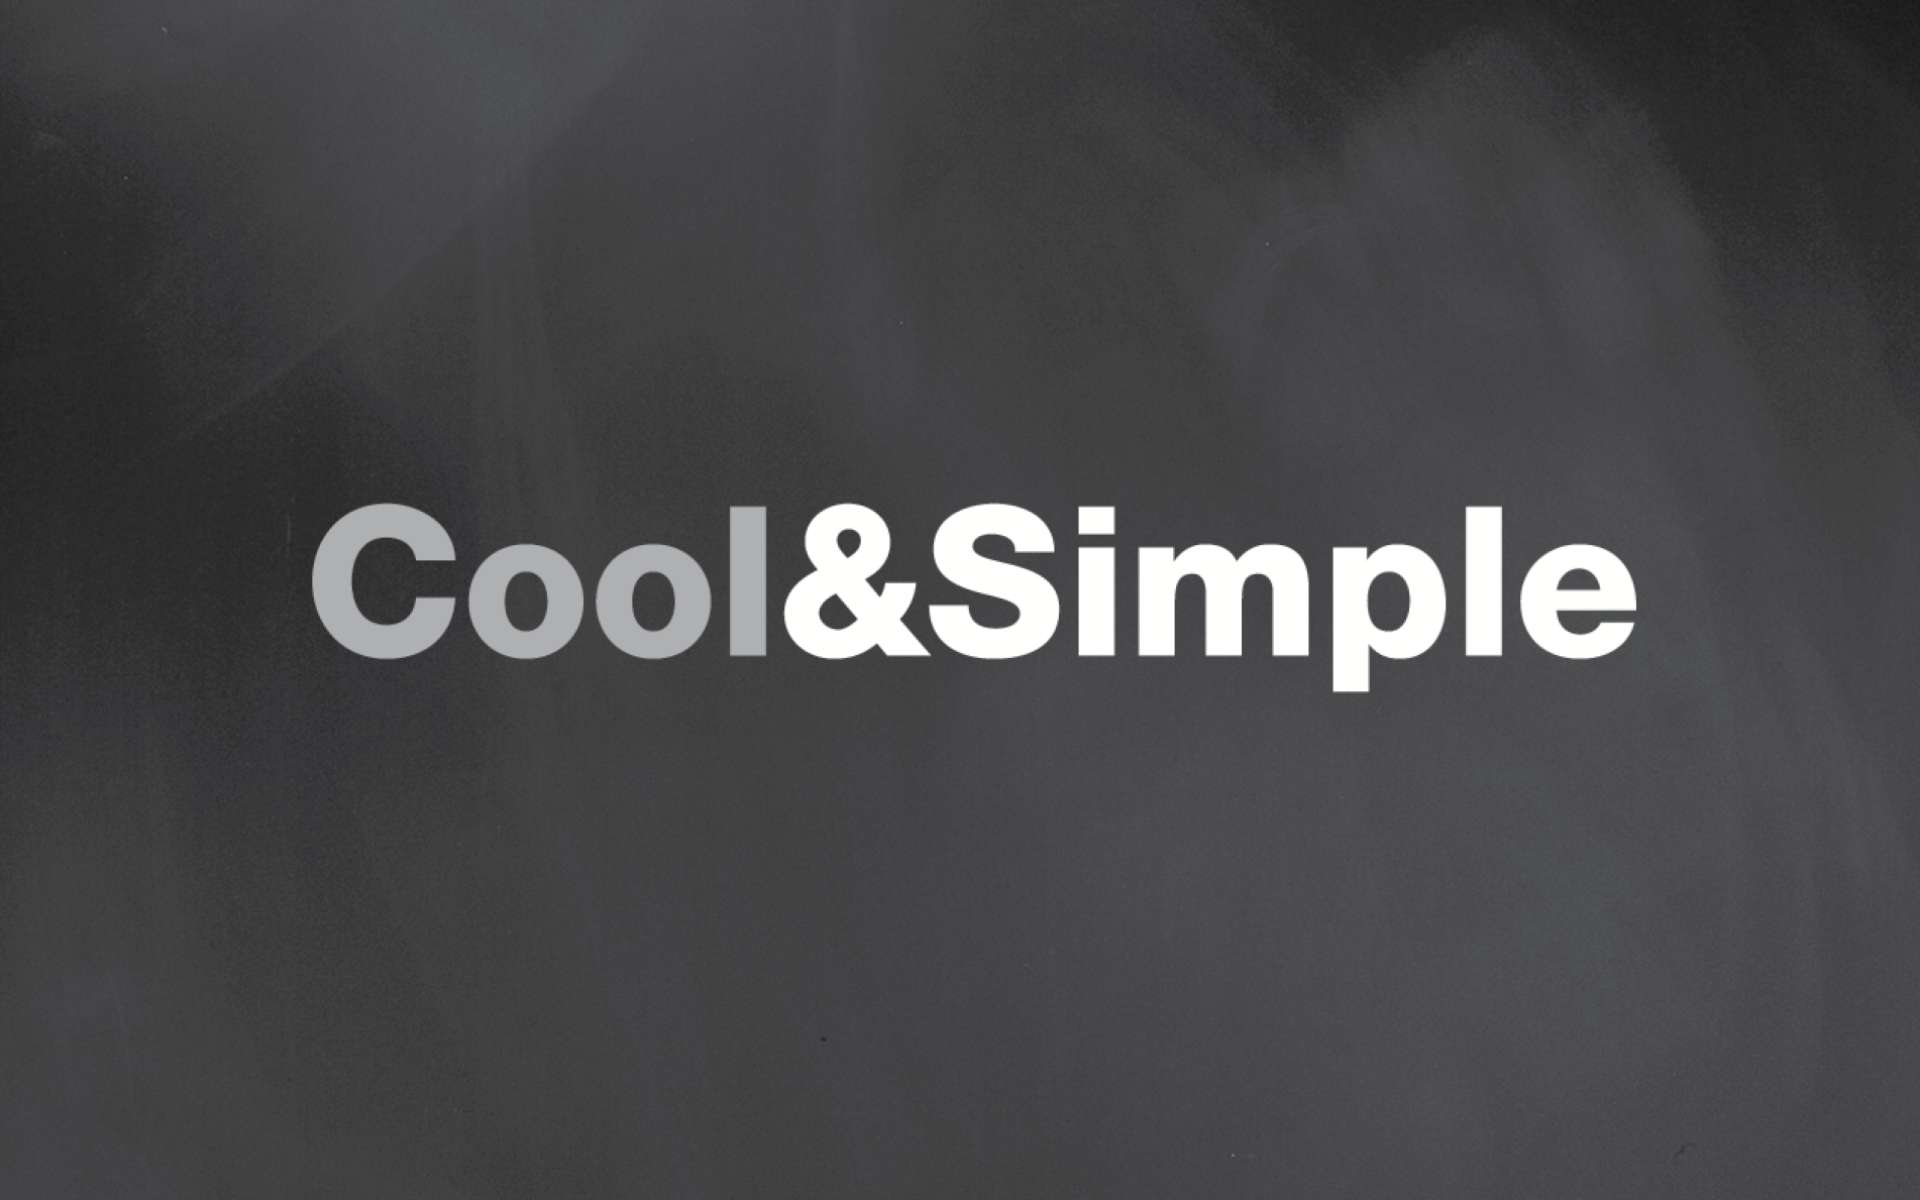 Cool&Simple - Image de marque et concept de boutique